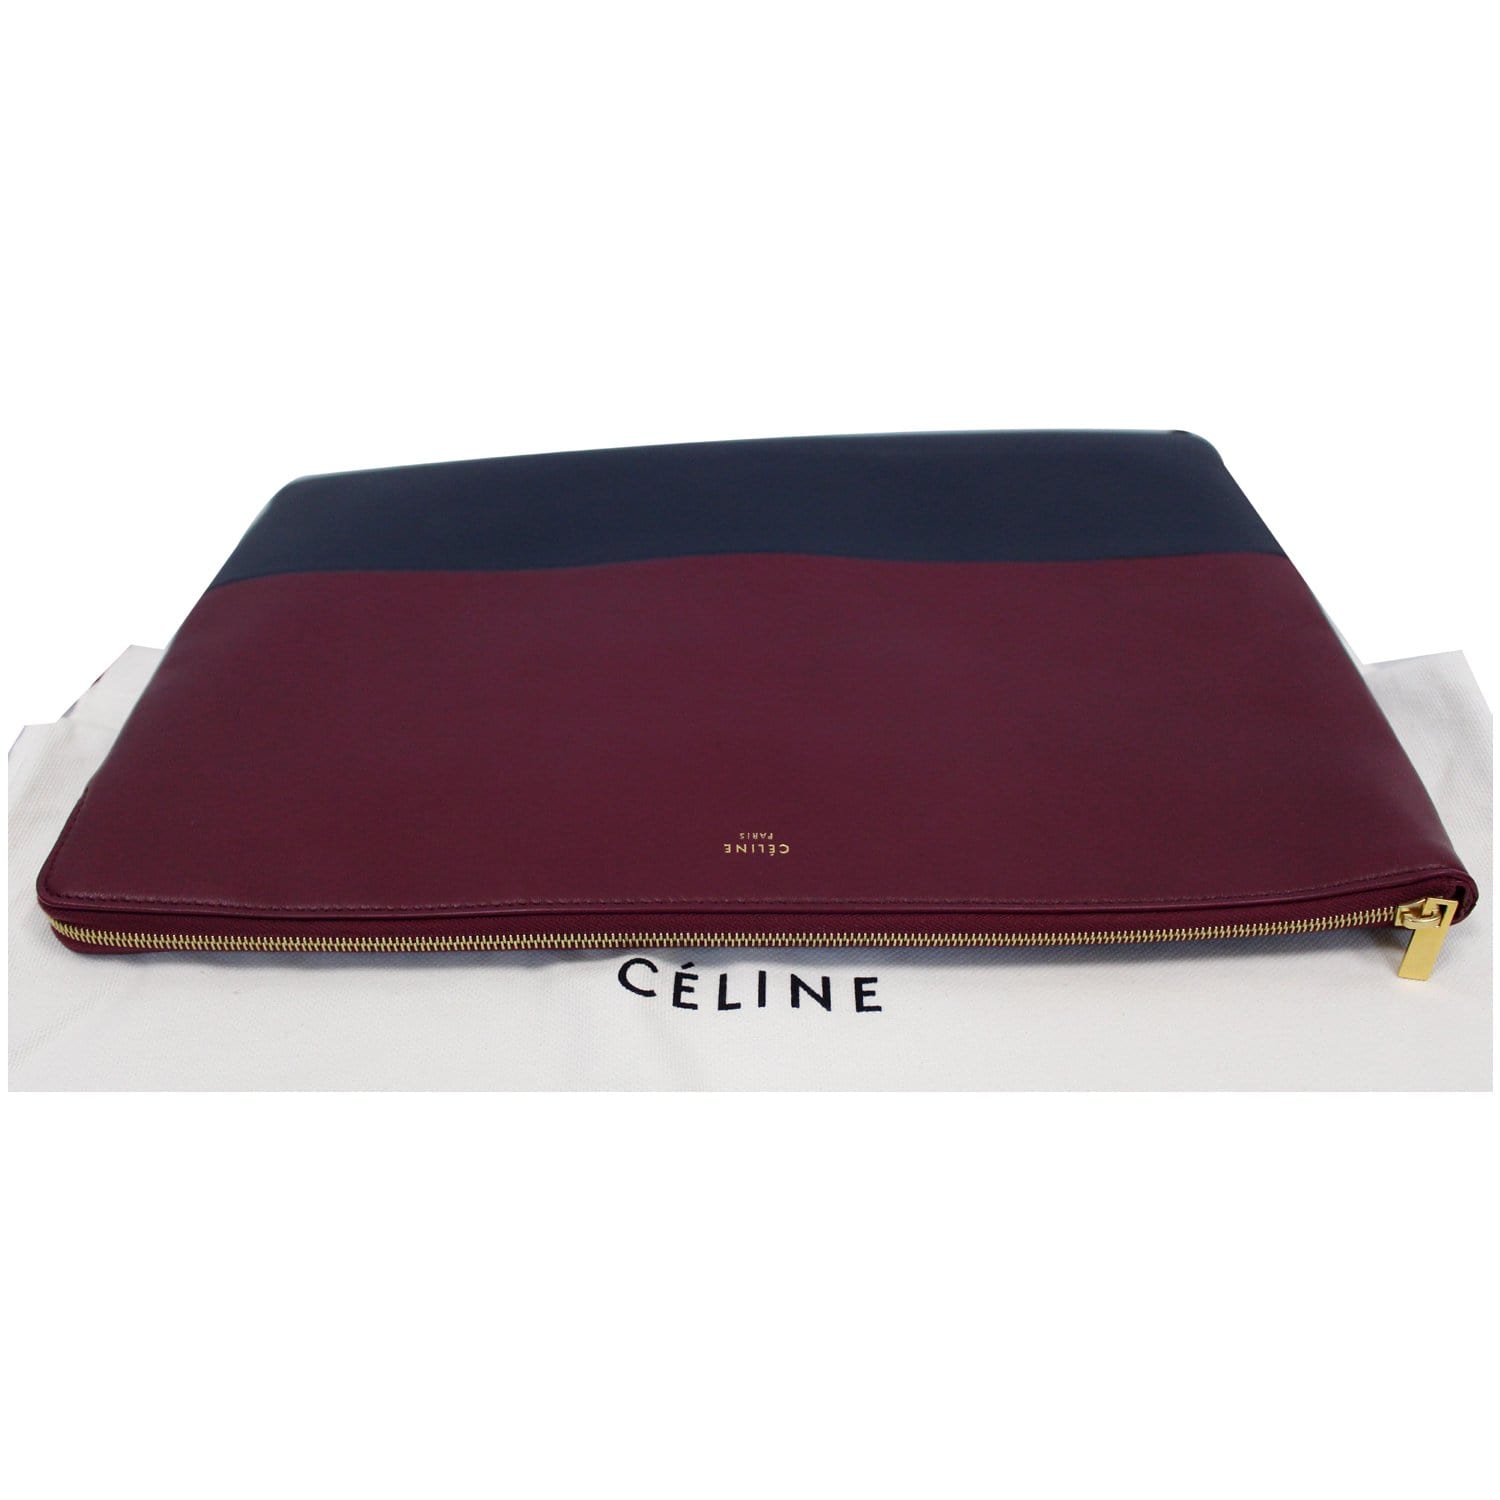 Fauré Le Page Leather Pochette Cal 22 - Burgundy Clutches, Handbags -  FLP20467